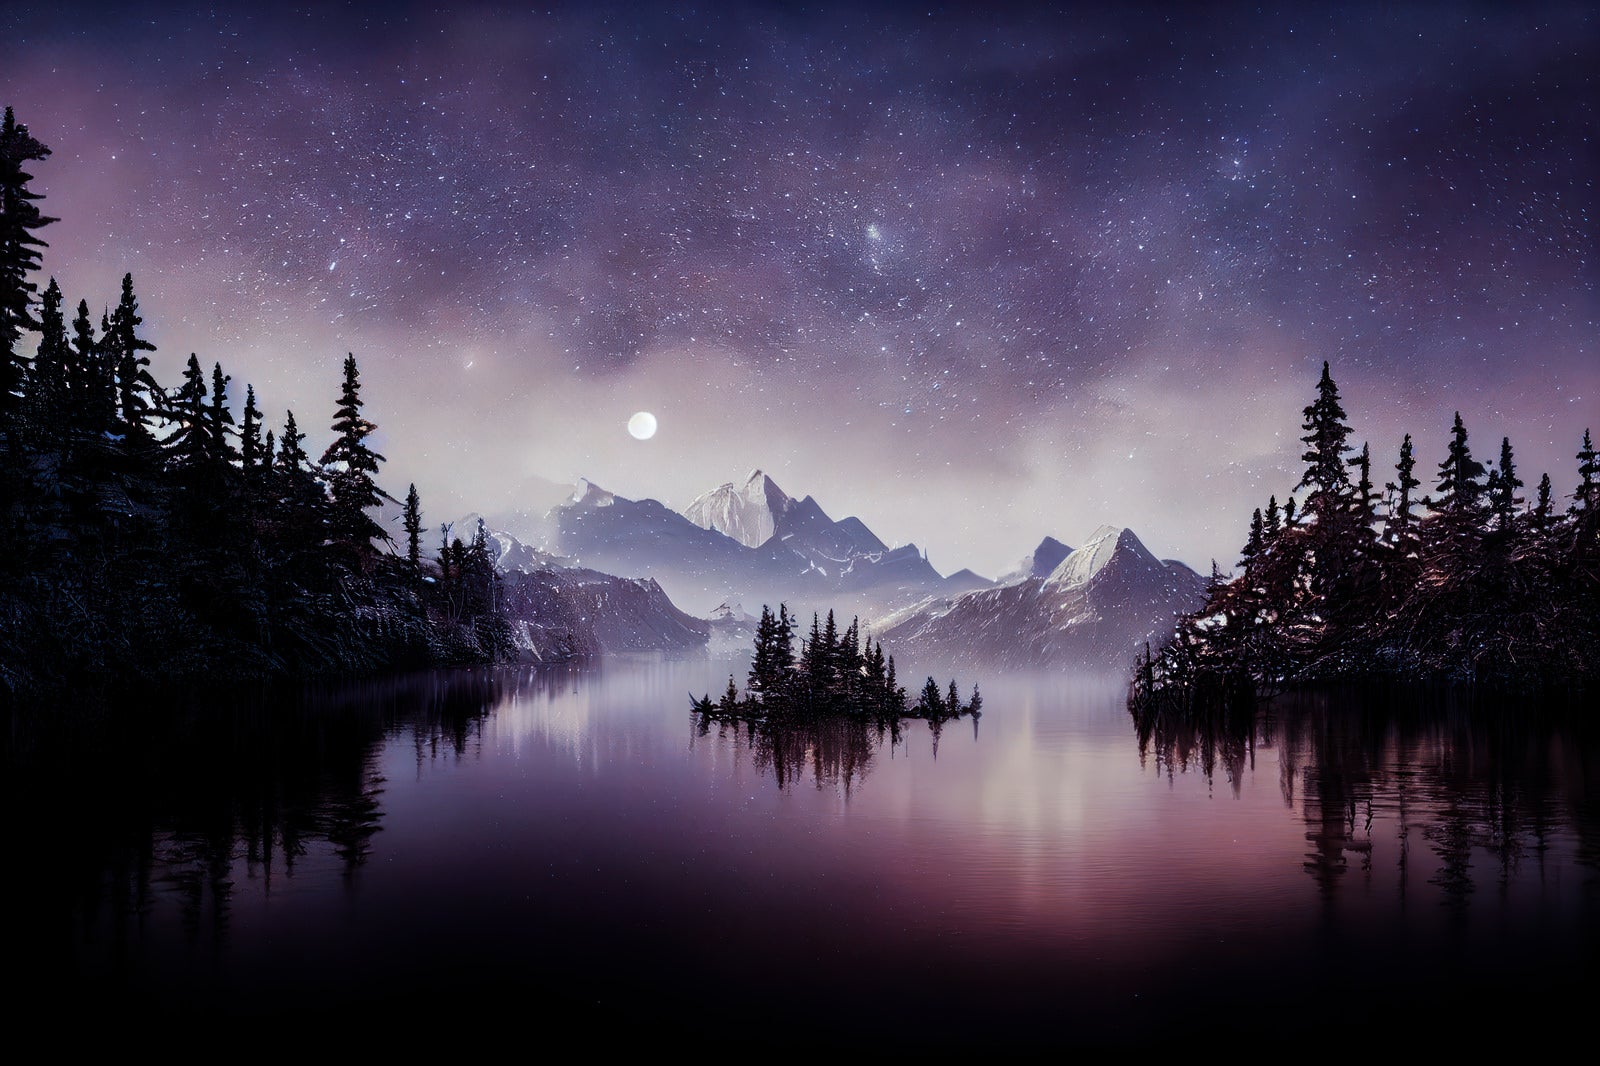 「星空きらめく湖と山々のシルエット」の写真